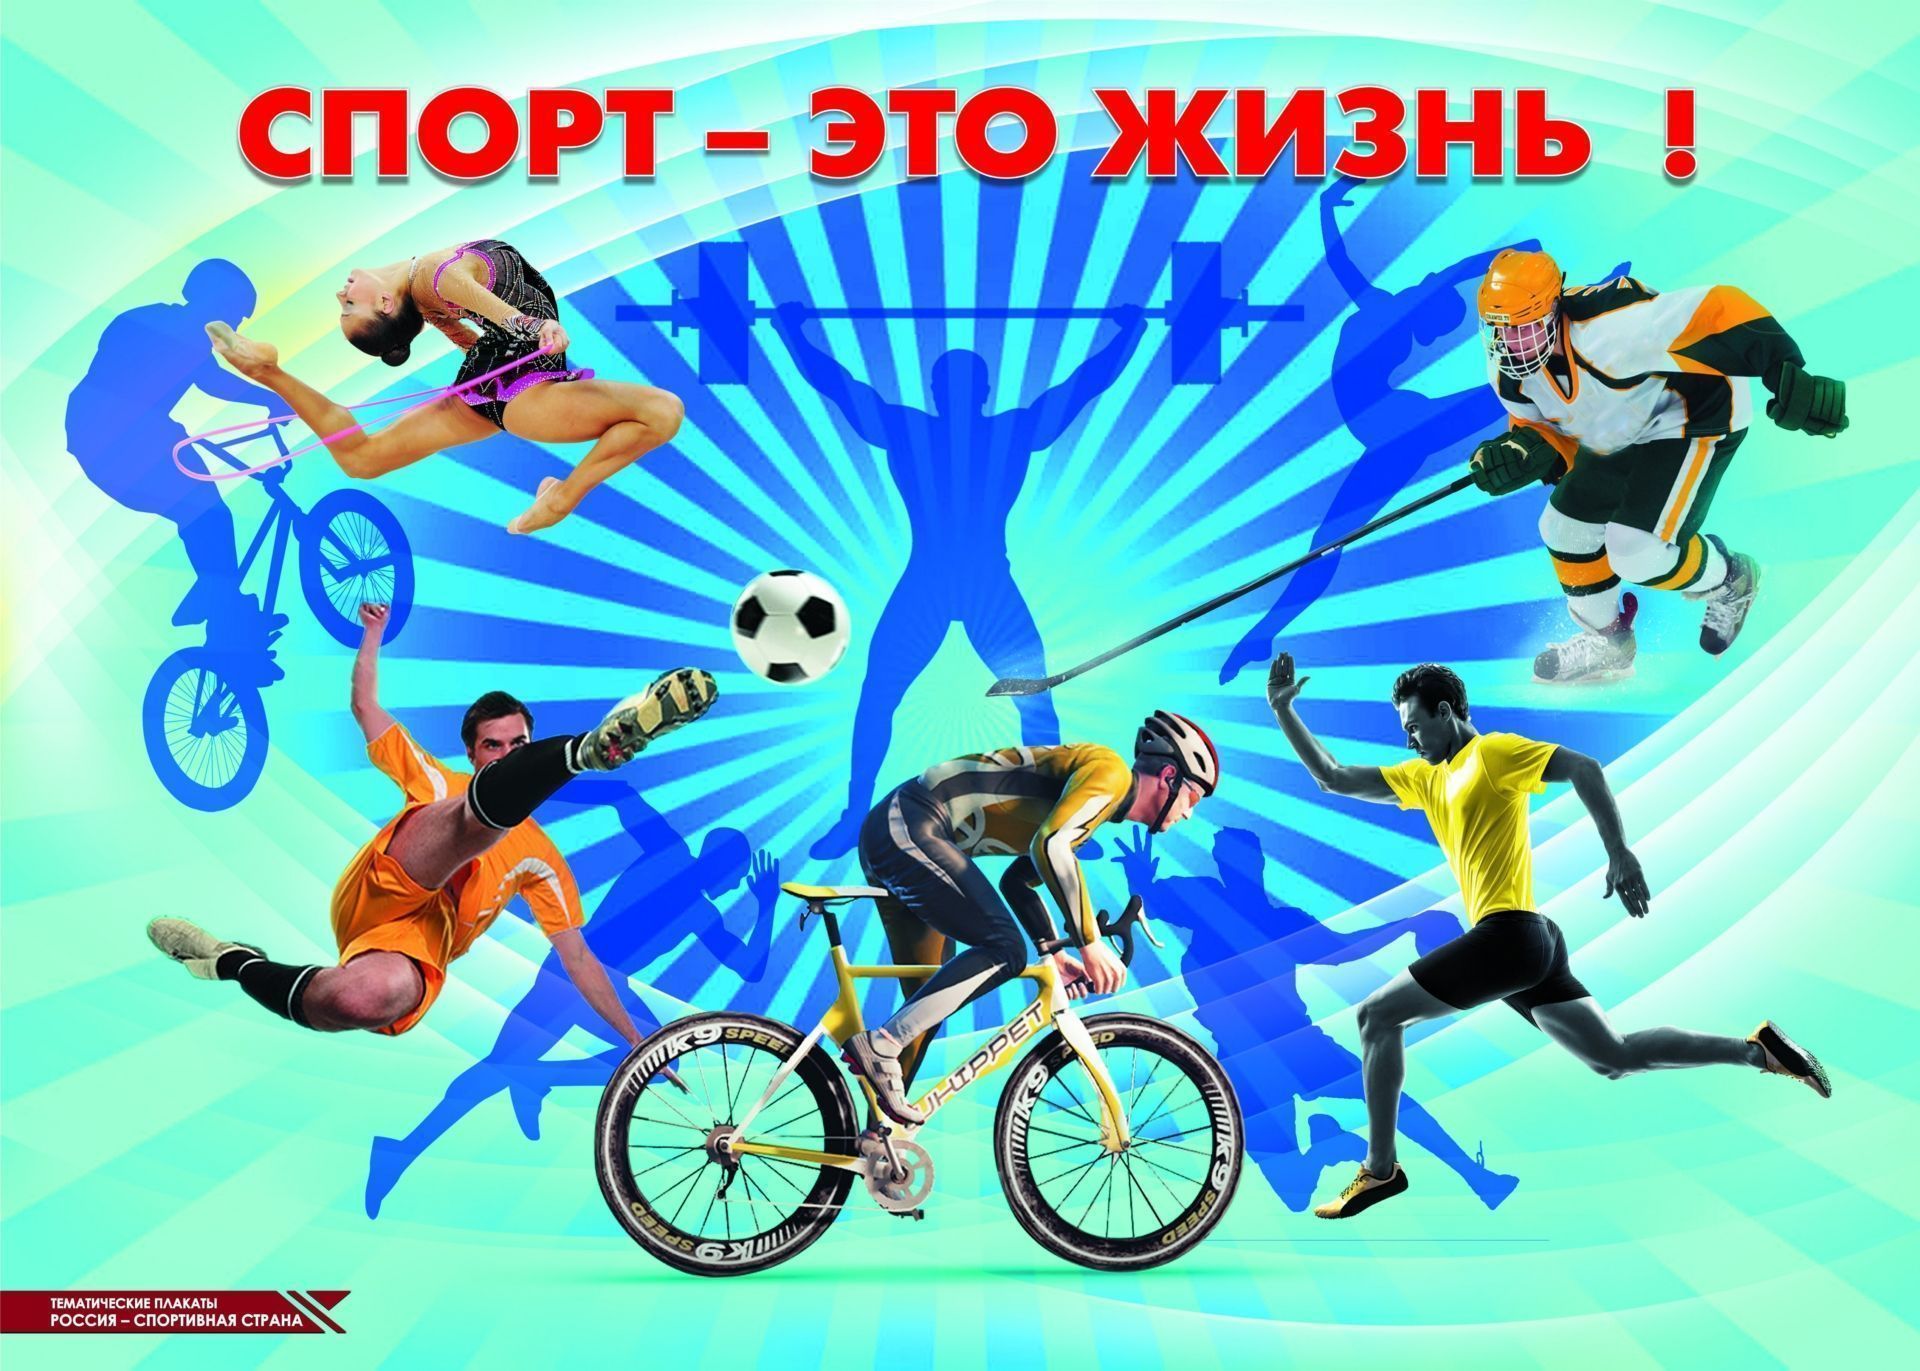 Мероприятия на базе Нижневартовской спортивной школы.